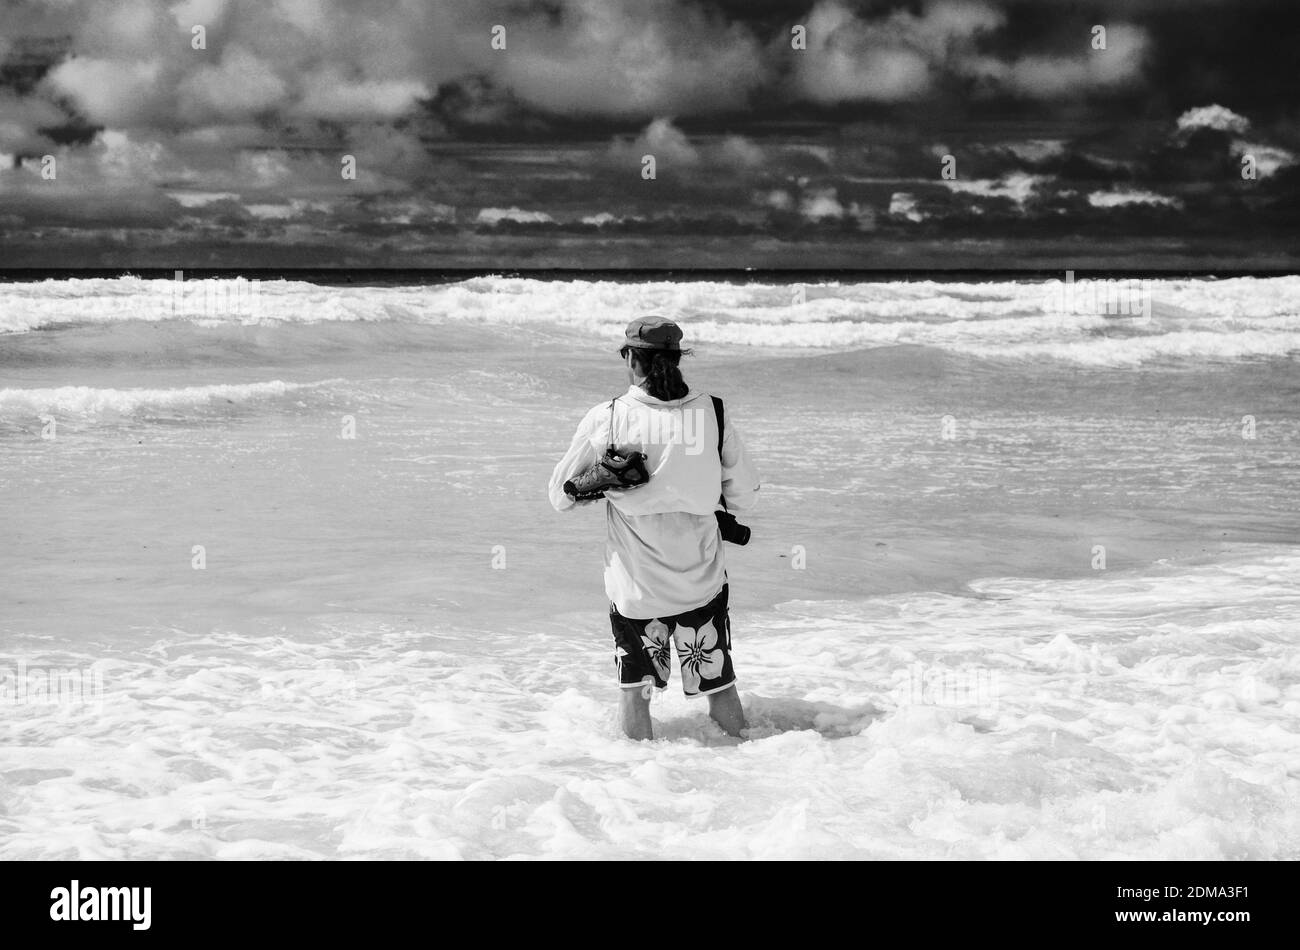 Homme en vêtements de plage debout au fond des genoux dans l'océan, sur l'île de Galapagos. Avec appareil photo et chaussures sur son épaule, avec filtres noirs et blancs. Banque D'Images